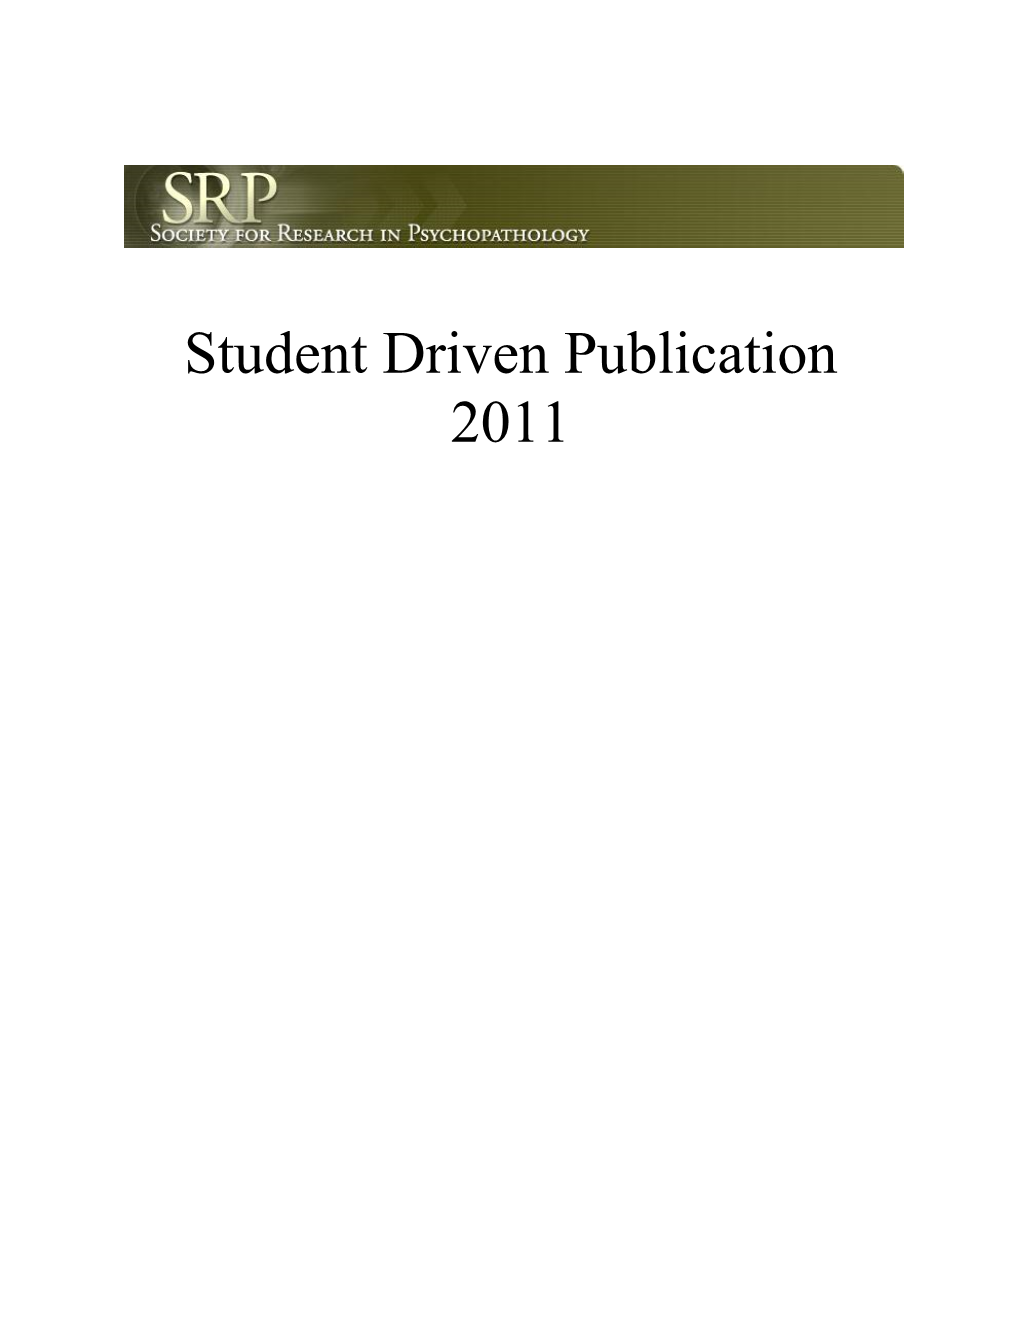 Student Driven Publication 2011